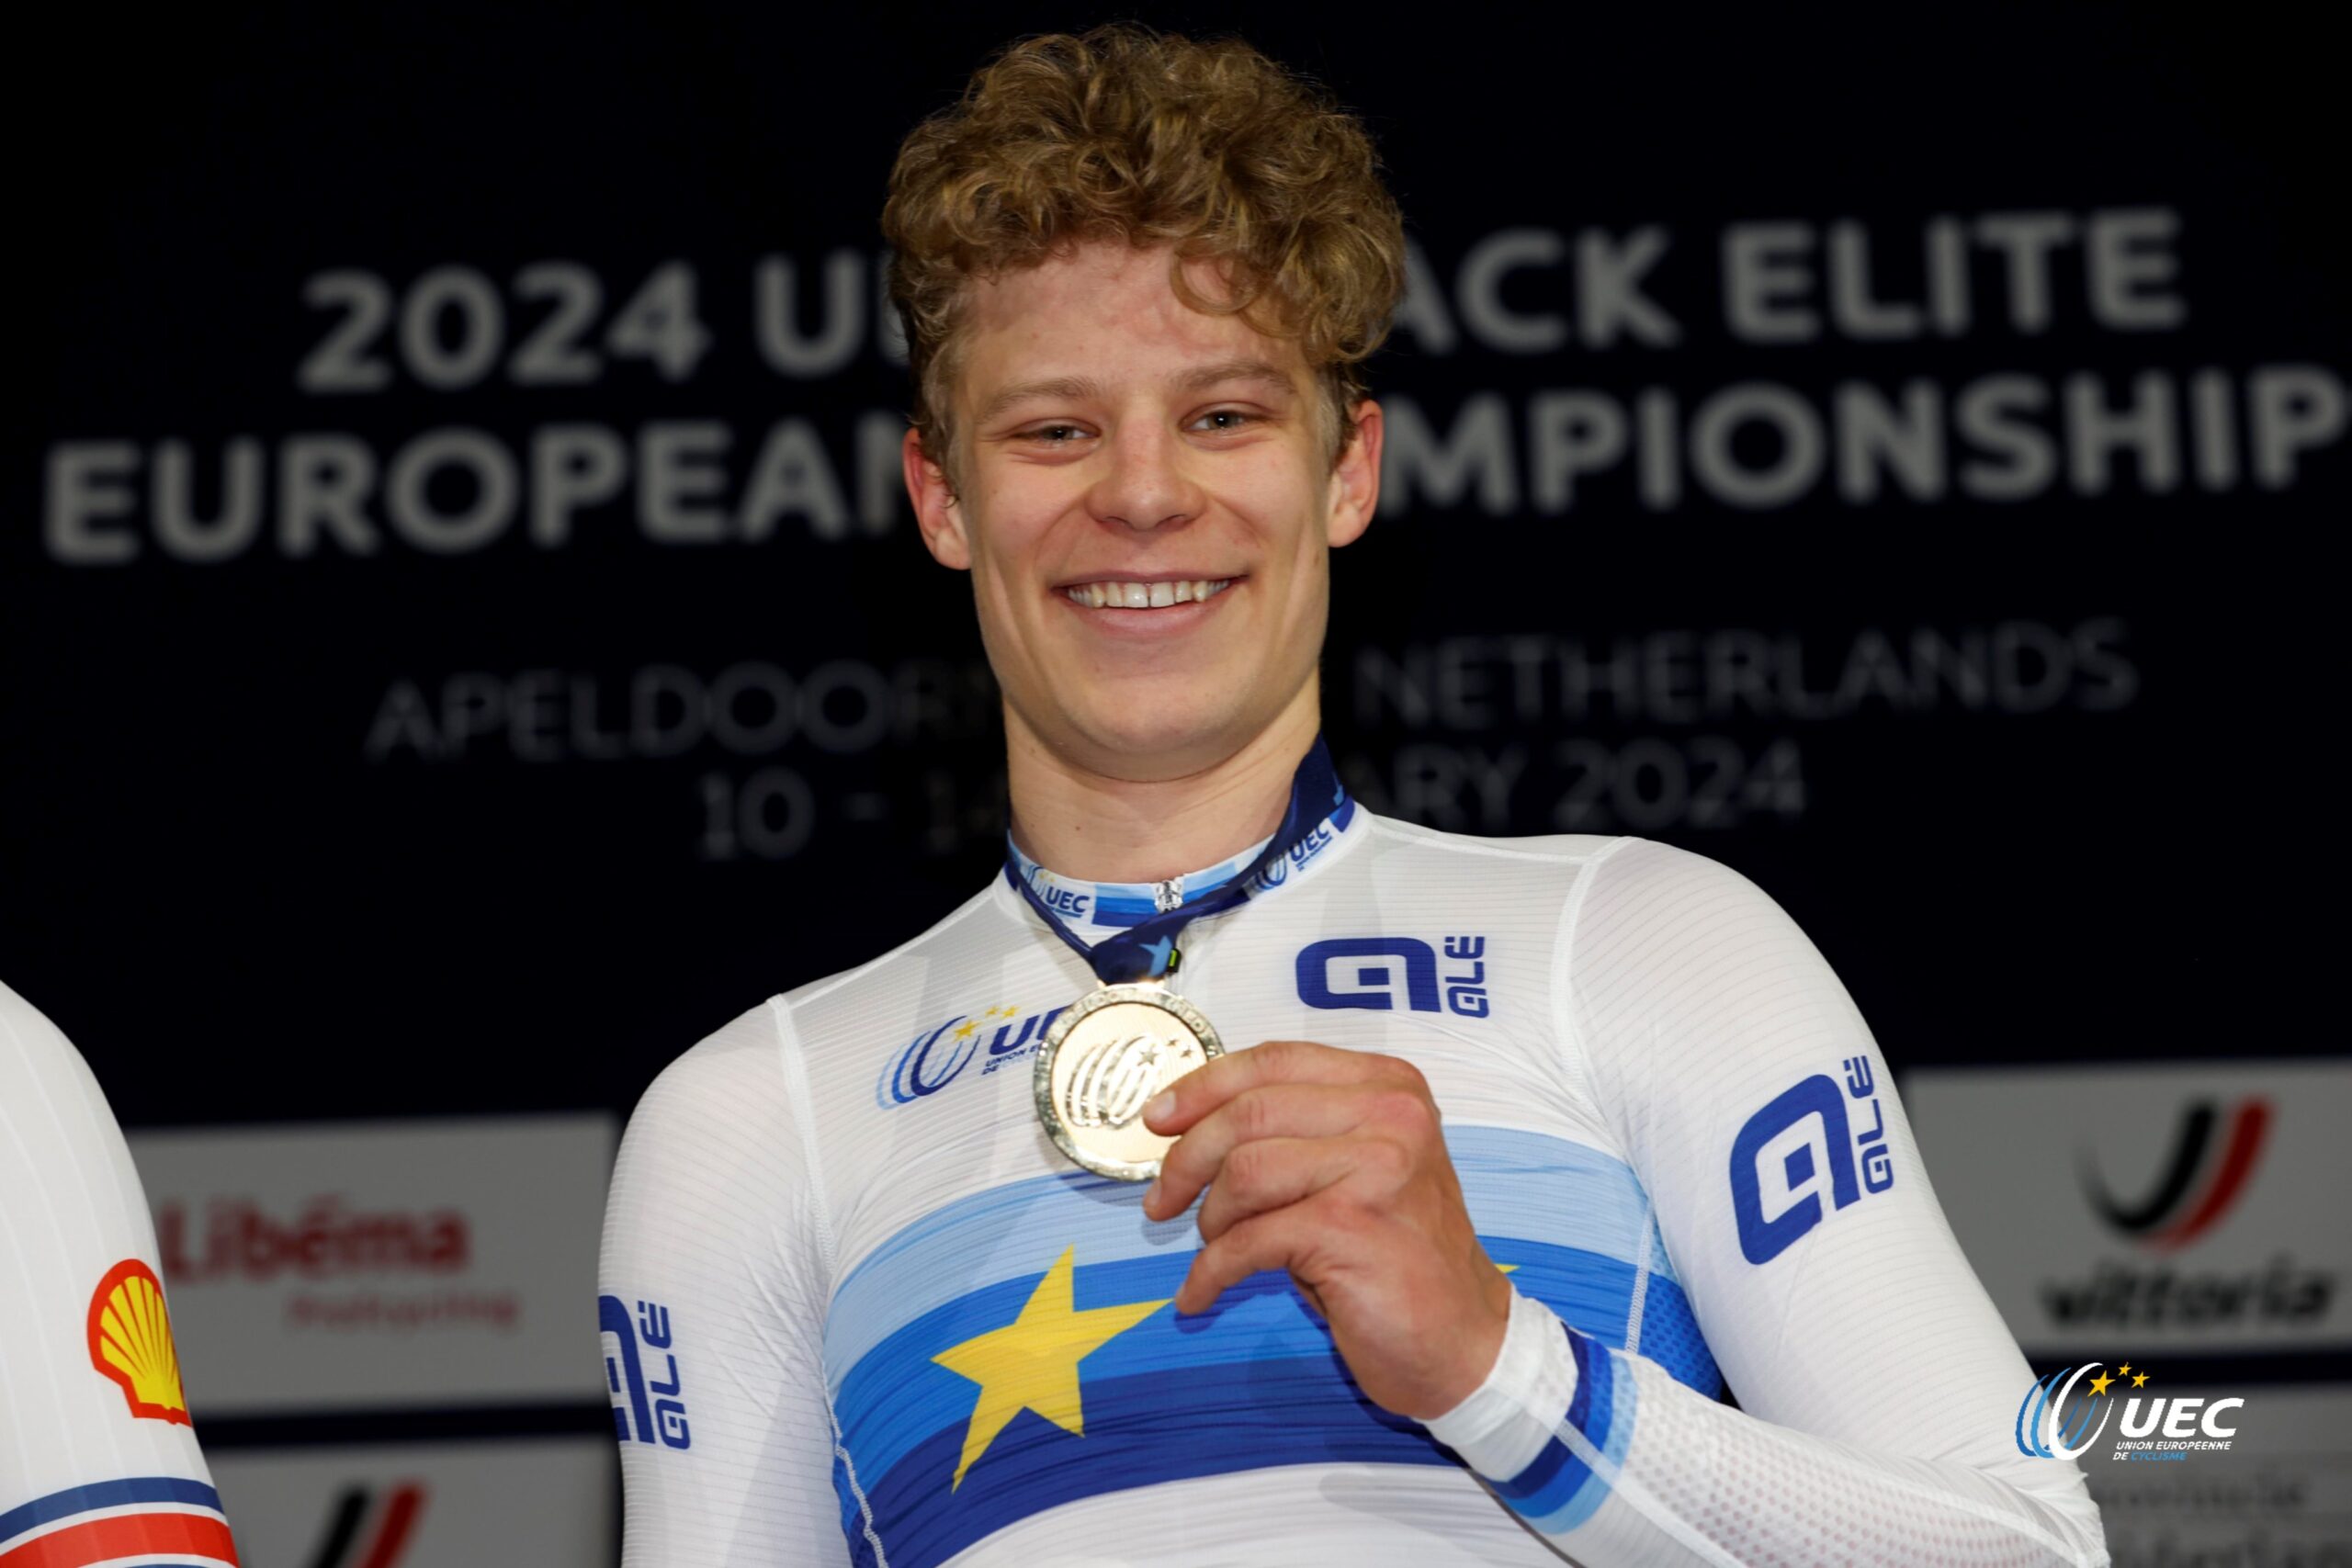 Тобиас Хансен — новый чемпион Европы в трековой гонке на выбывание